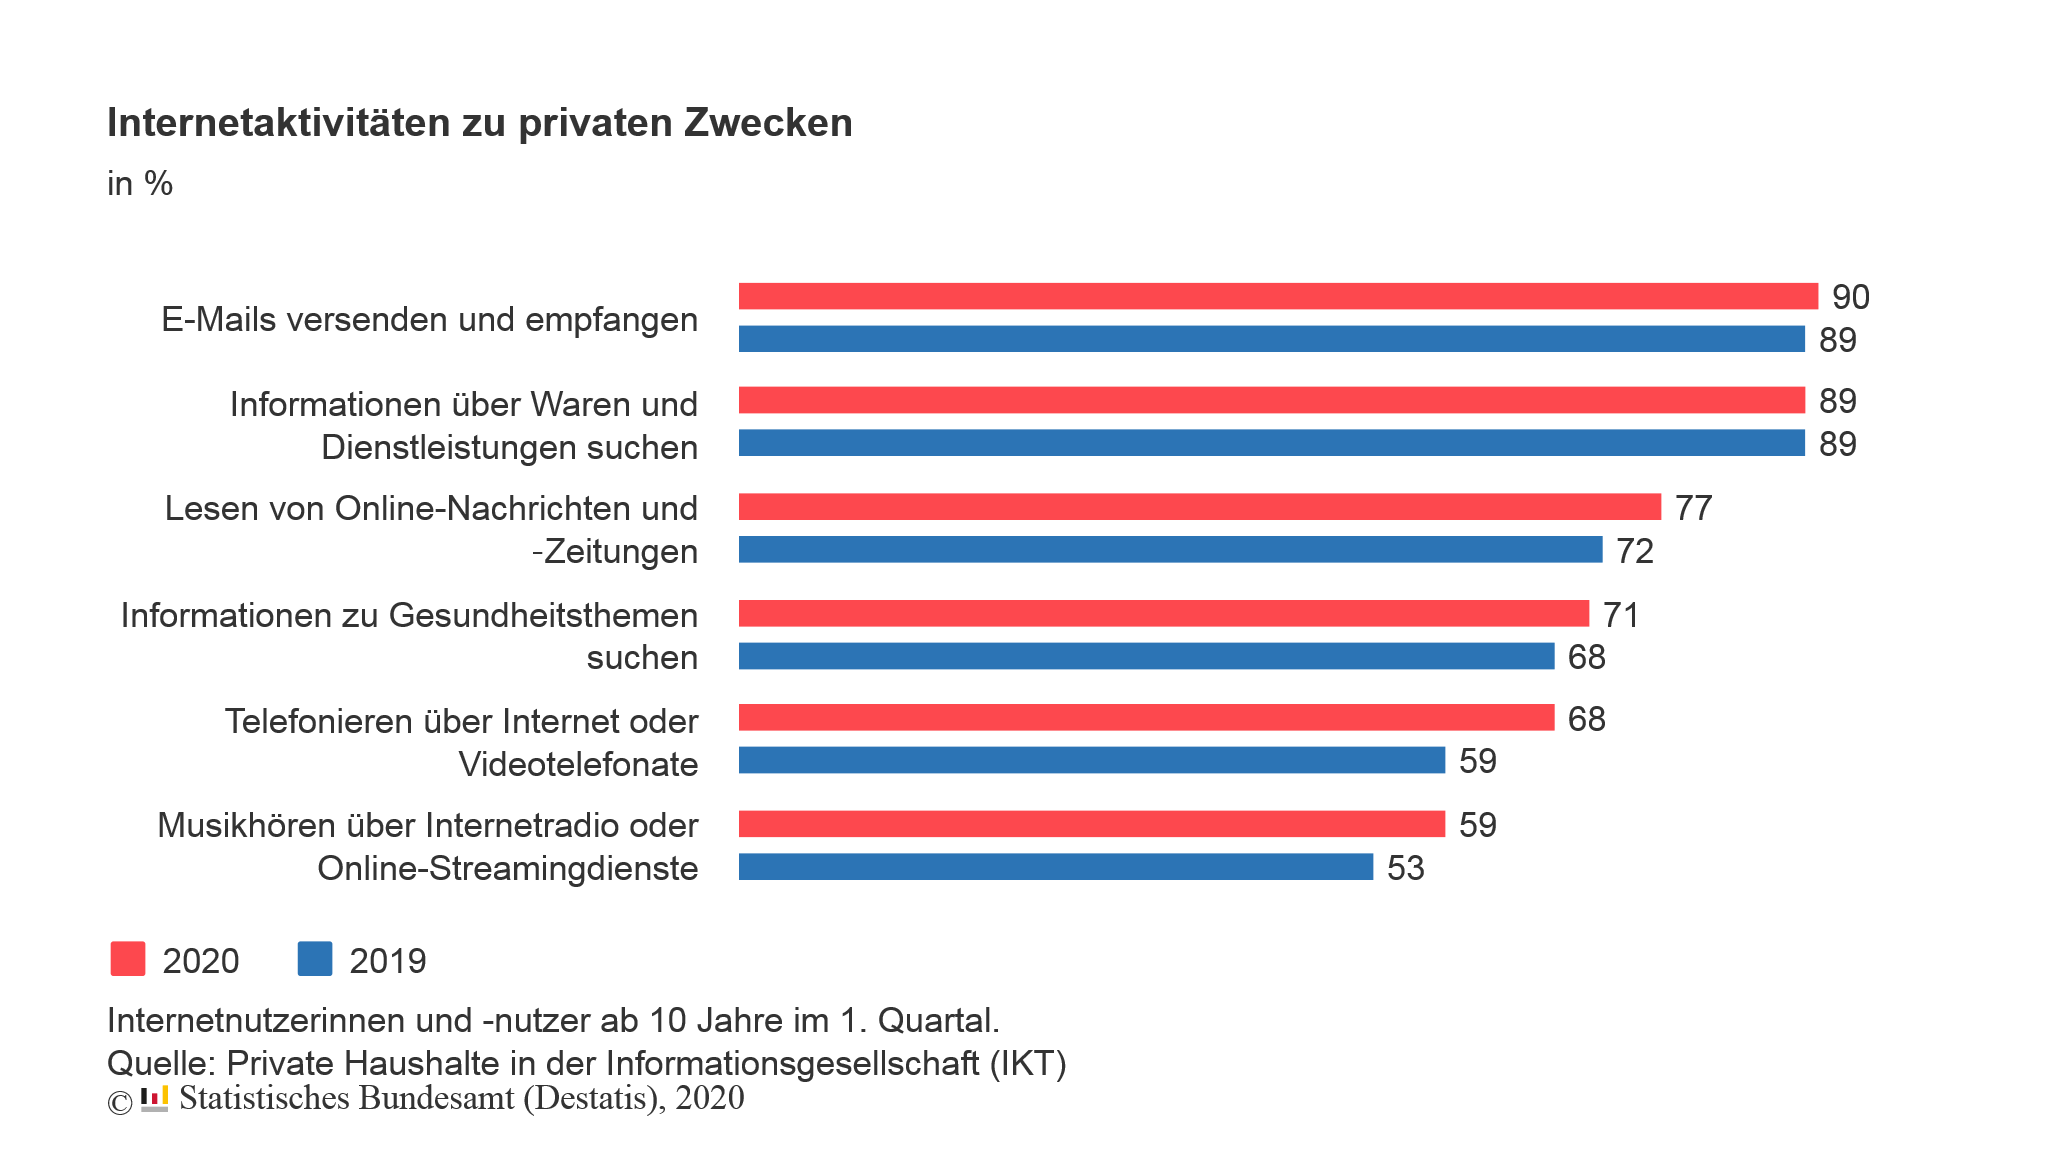 Die Internetaktivitäten der Deutschen im 1. Quartal 2020 im Vergleich zum Vorjahr. Grafik: Destatis